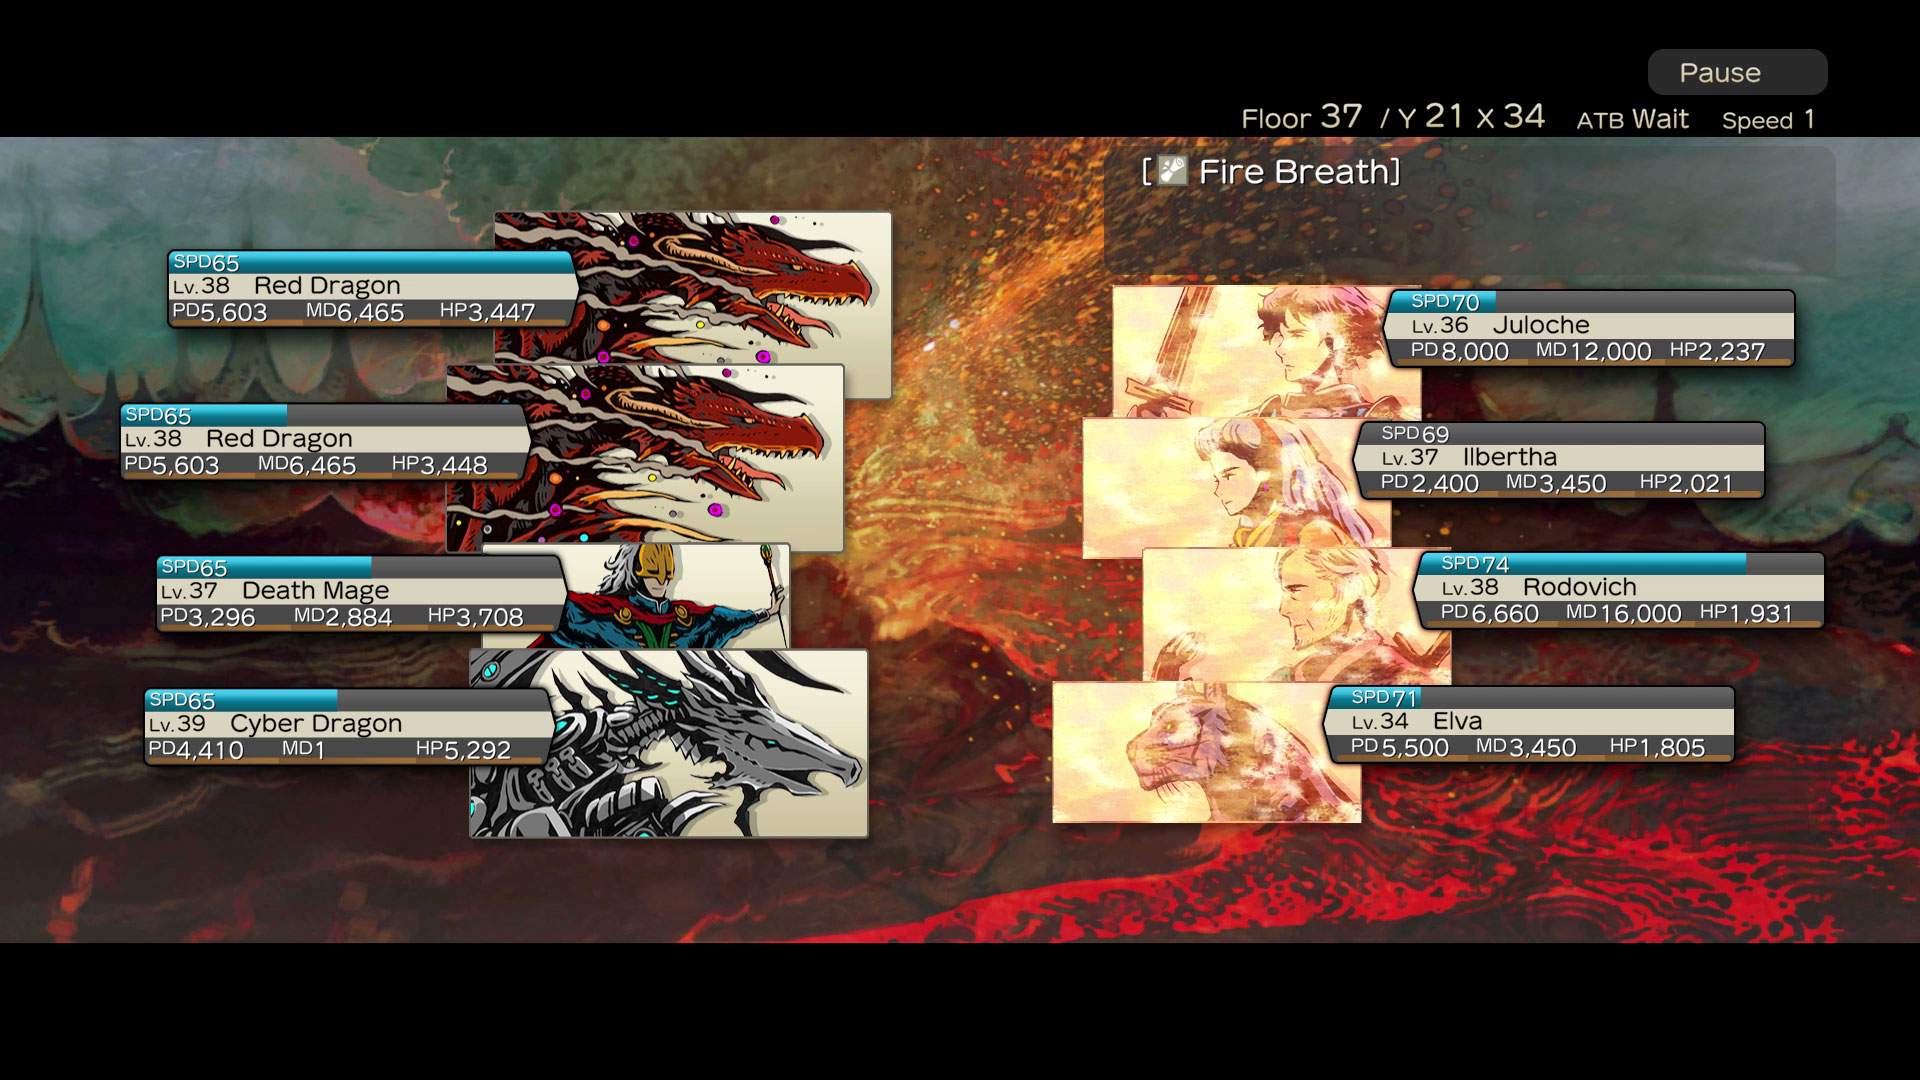 Image de gameplay d'un combat au tour par tour où quatre personnages font face à quatre ennemis.